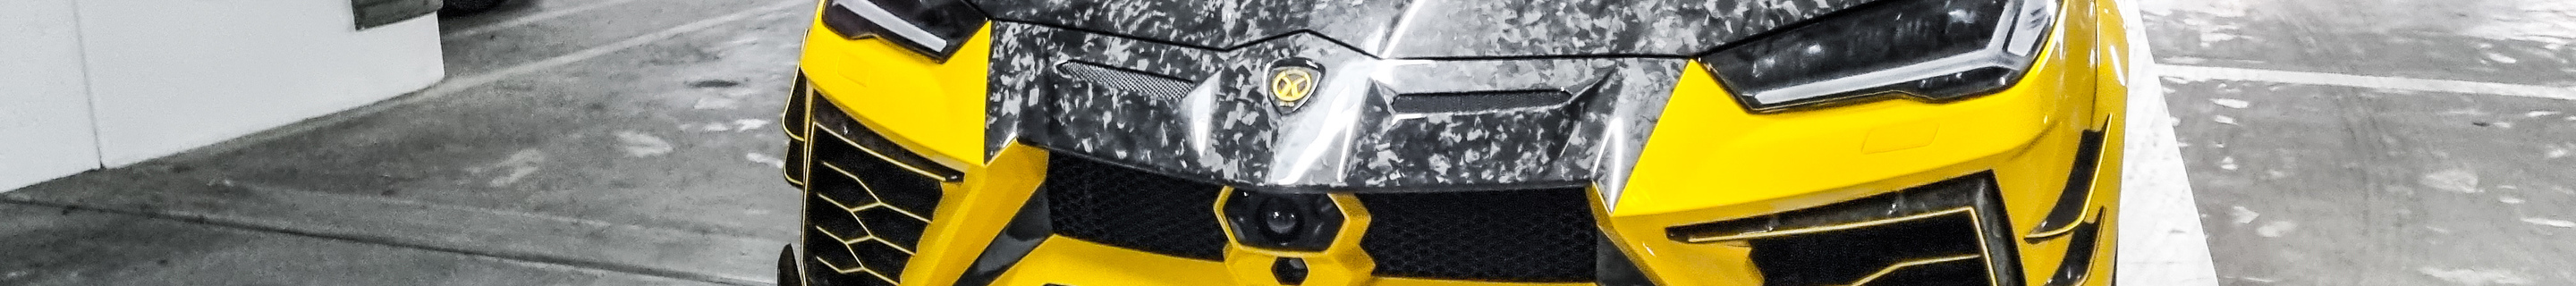 Lamborghini Urus Mansory Venatus Evo